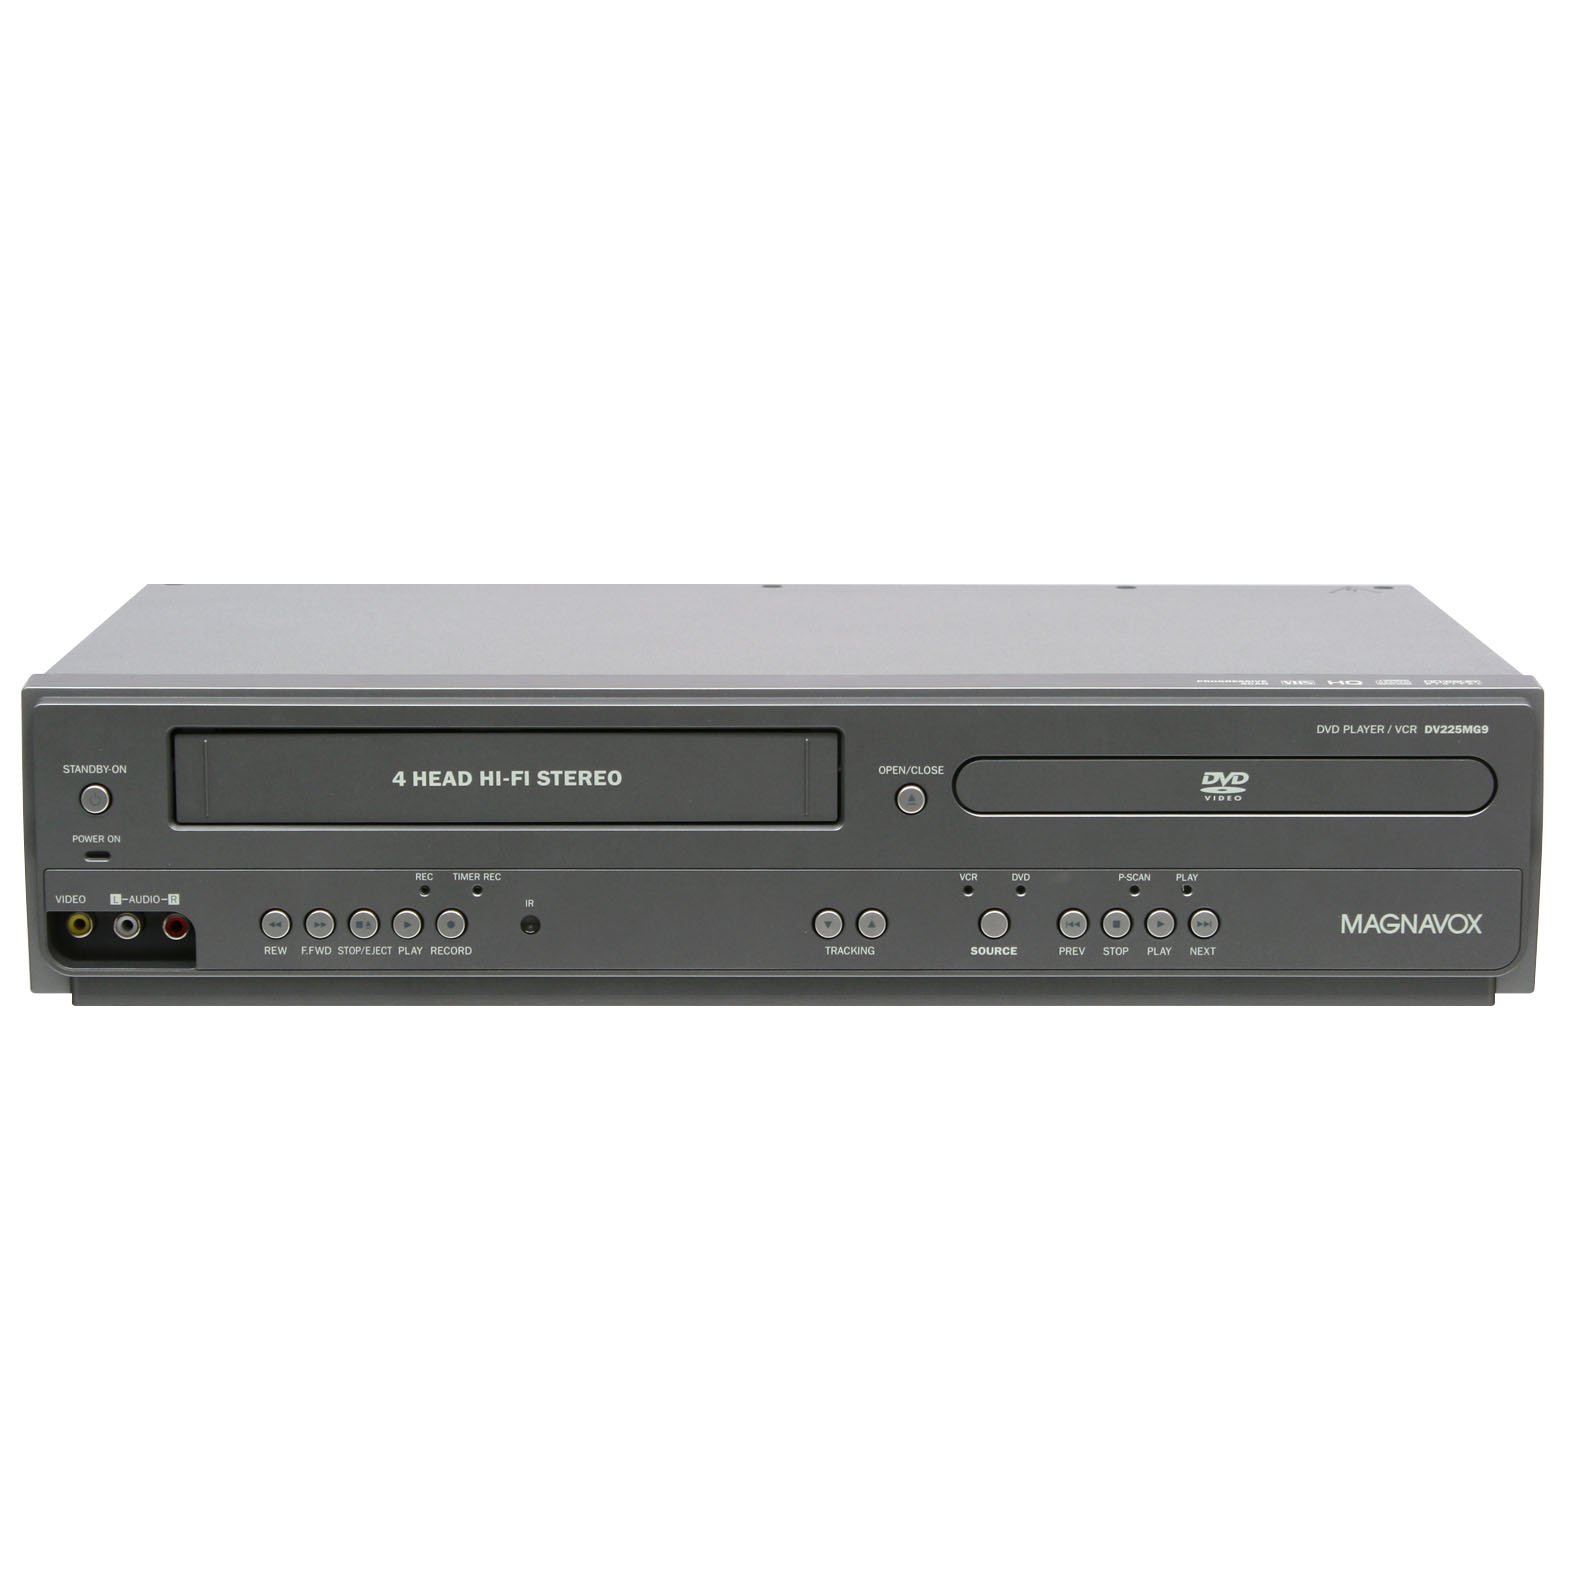 Magnavox DV225MG9 DVD Player and 4 Head Hi-Fi Stereo VC...